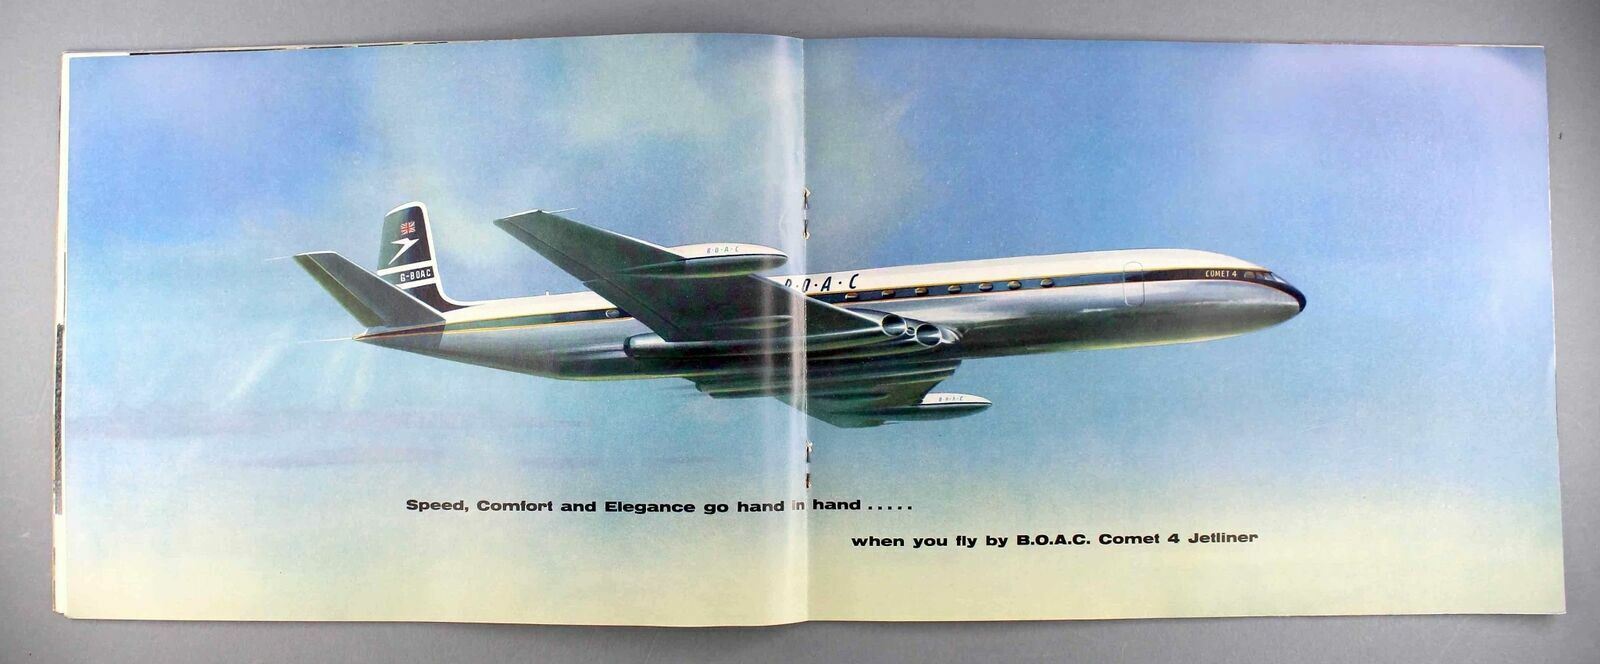 BOAC DE HAVILLAND COMET 4 JETLINER LARGE VINTAGE AIRLINE BROCHURE 1957 B.O.A.C.